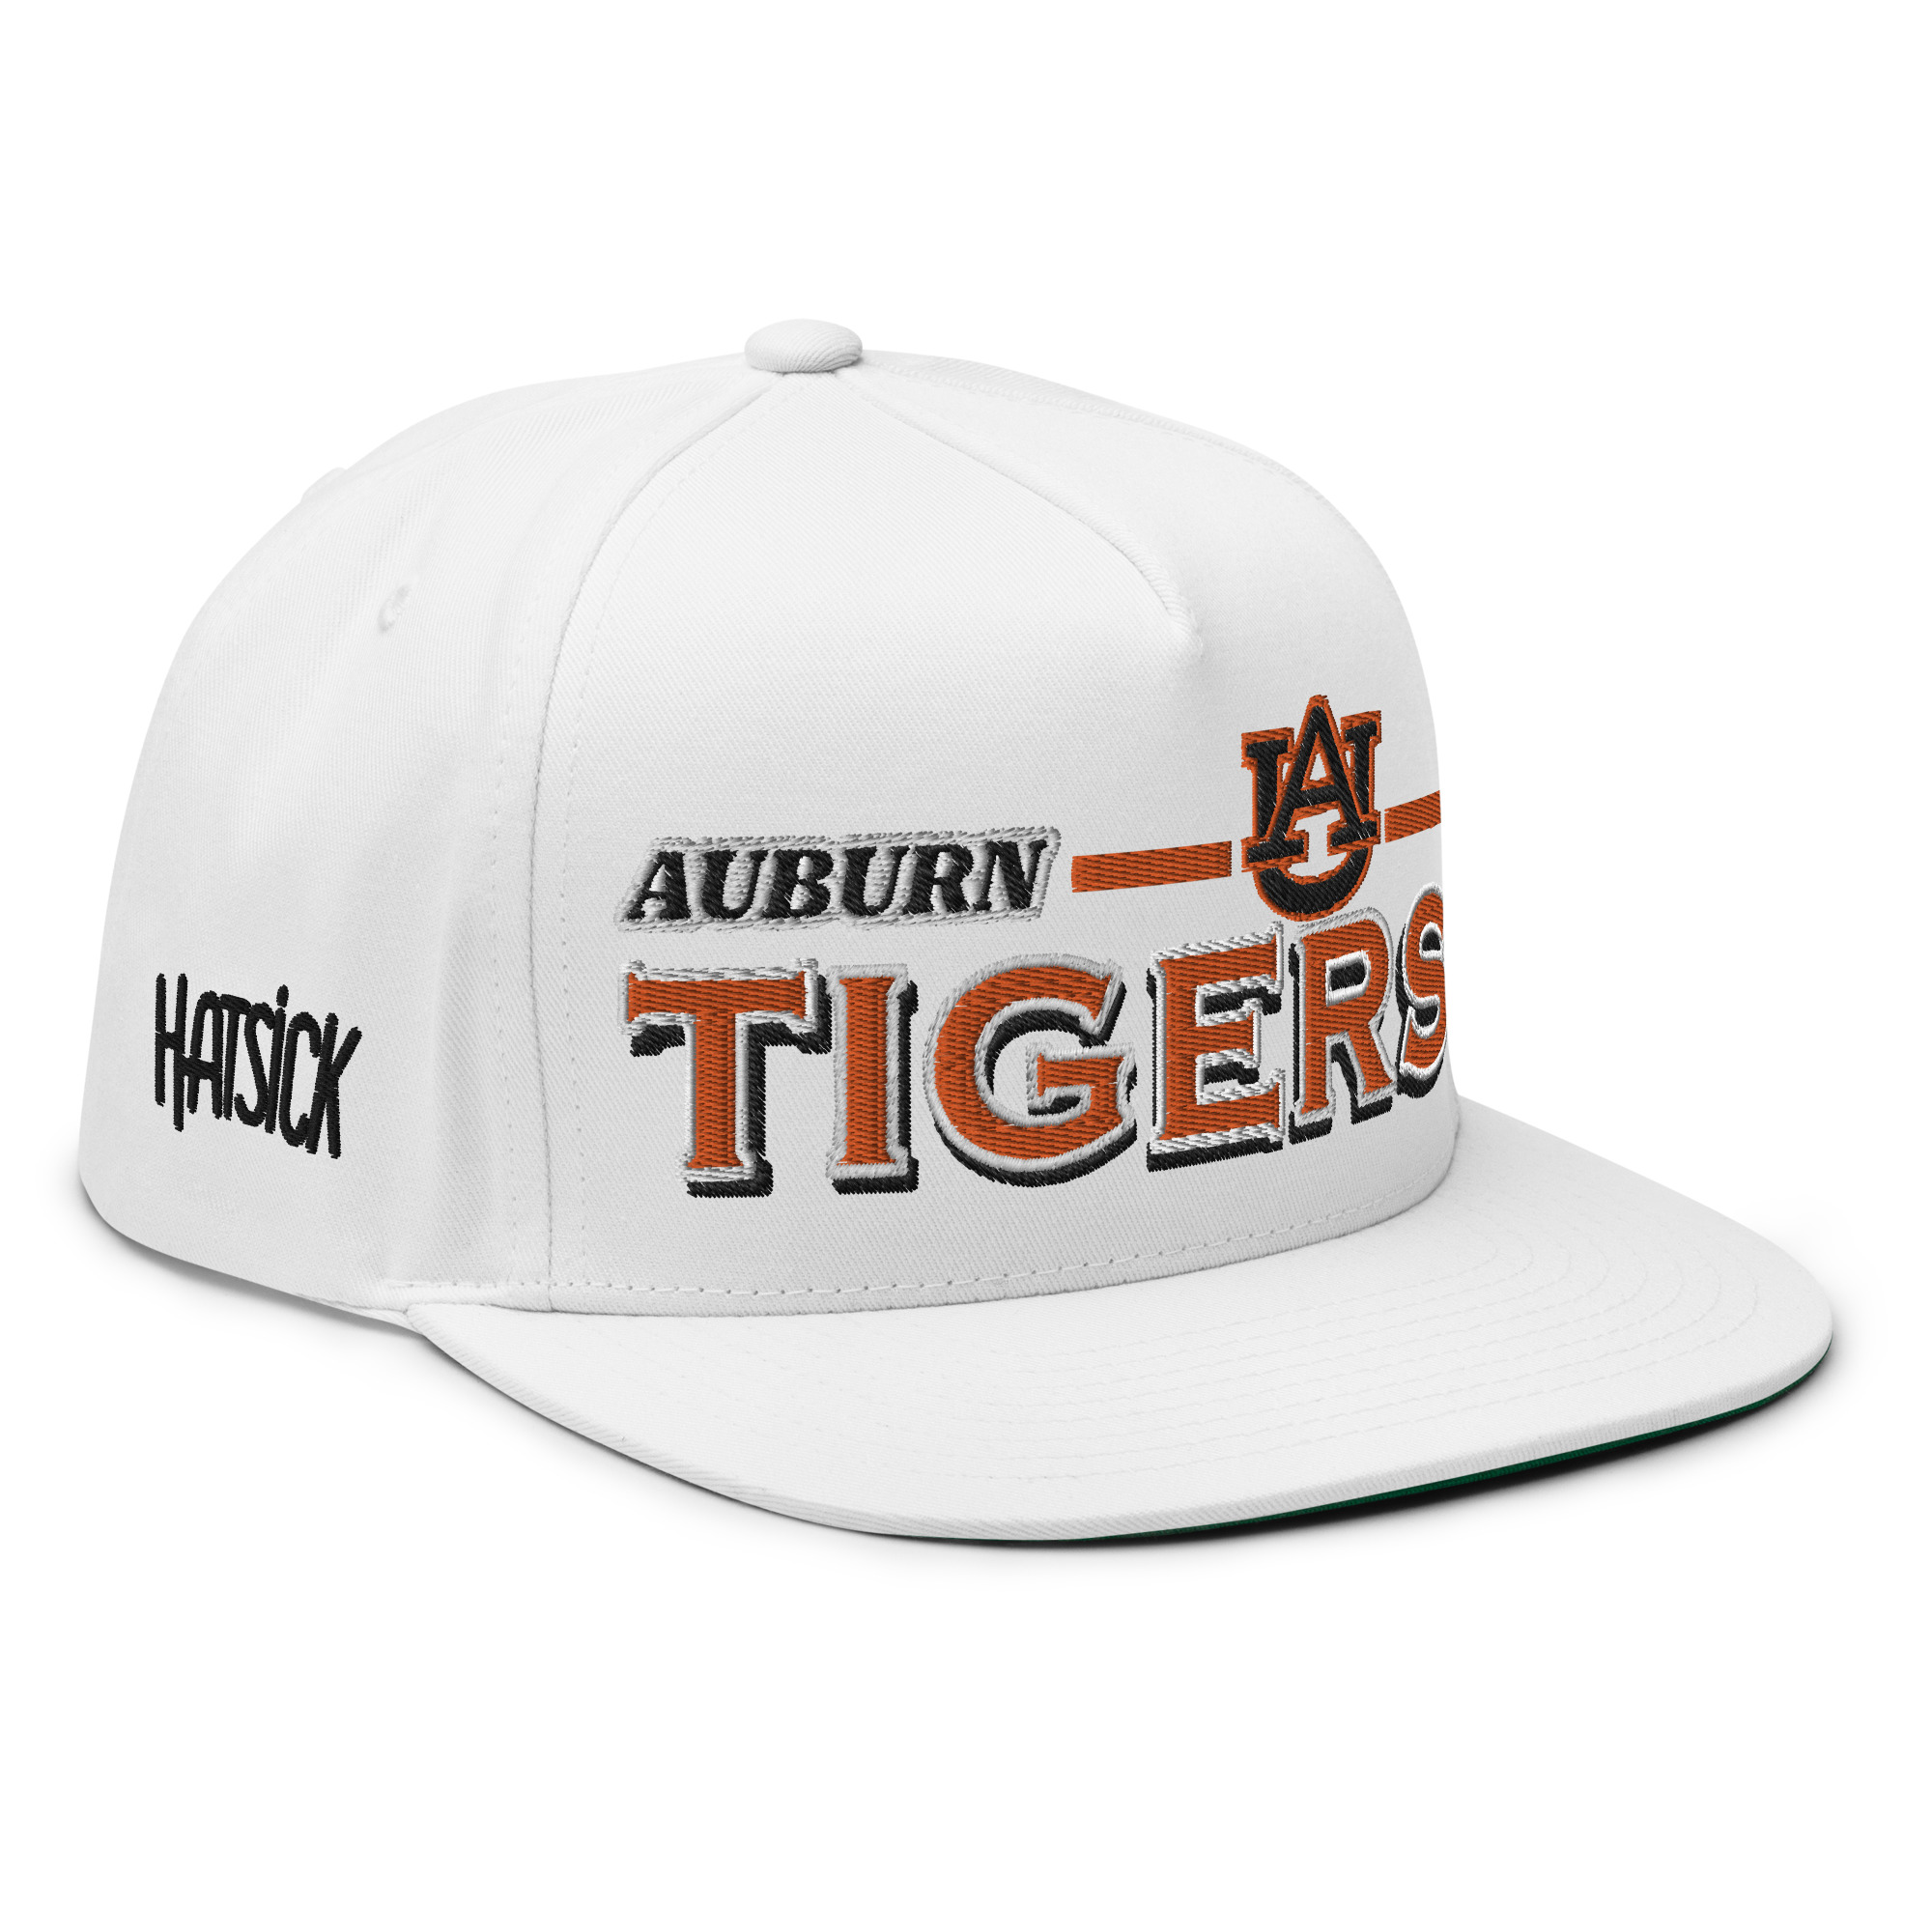 Auburn Tigers Flat Bill Cap